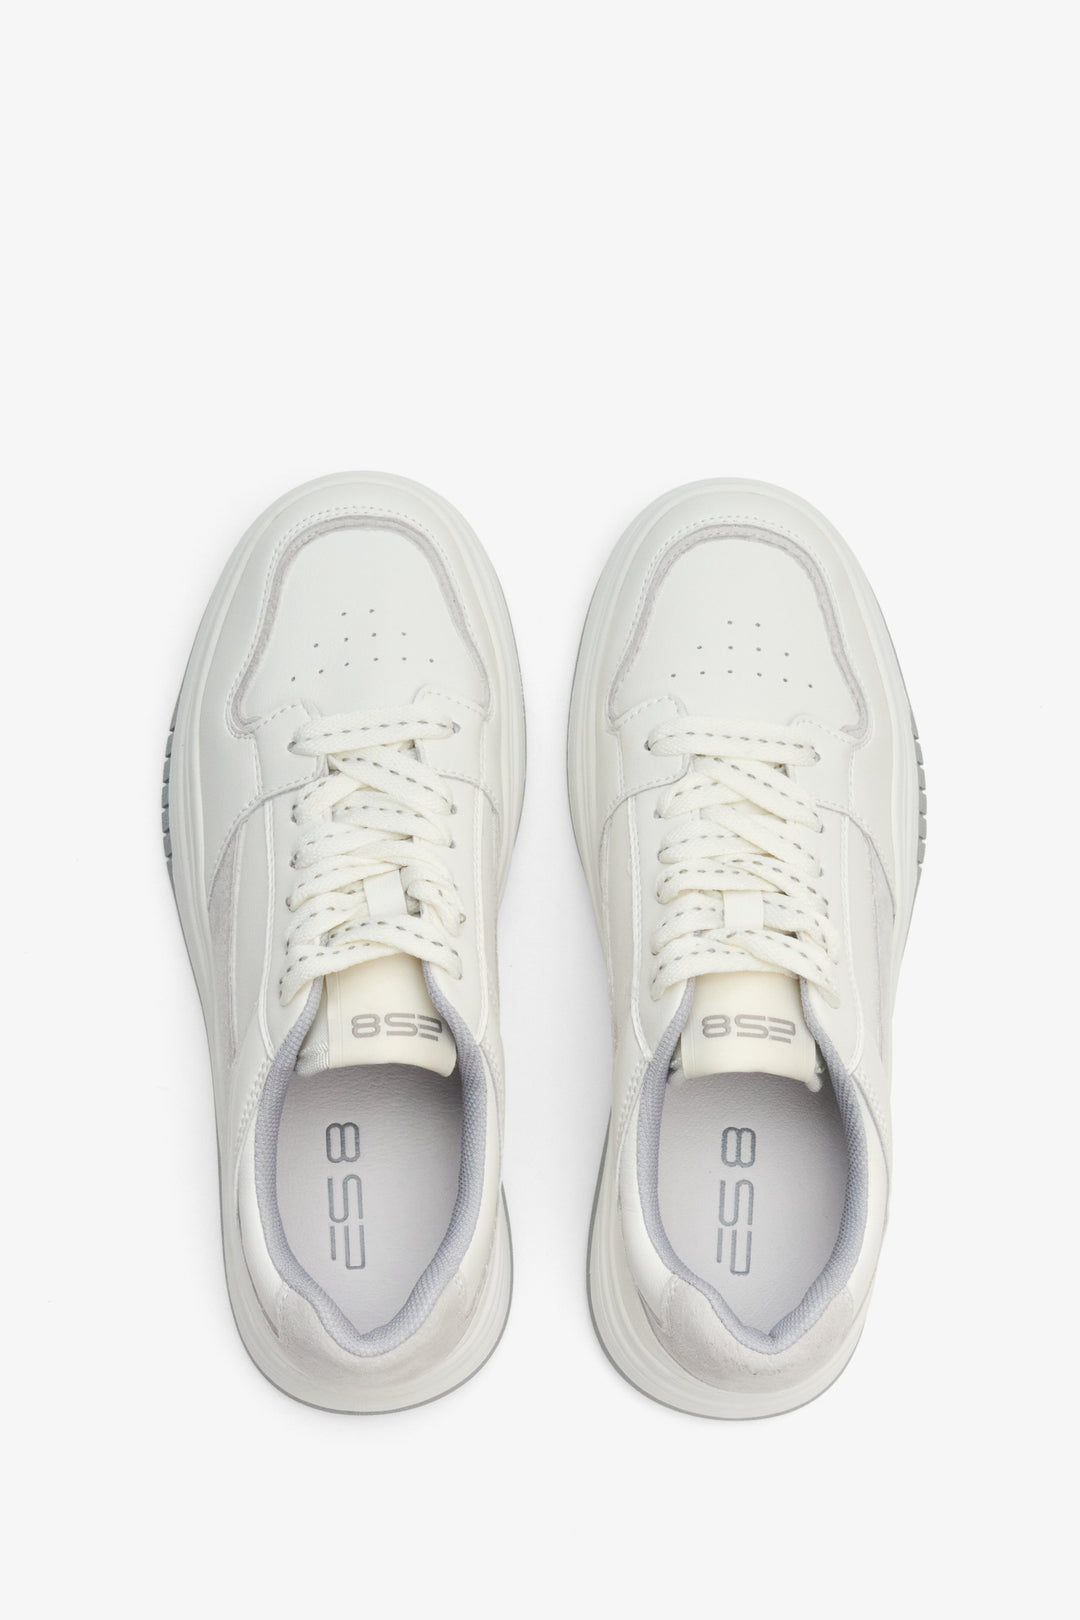 Damskie, skórzane sneakersy z linii sportowej ES 8 w kolorze biało-szarym - prezentacja obuwia z góry.